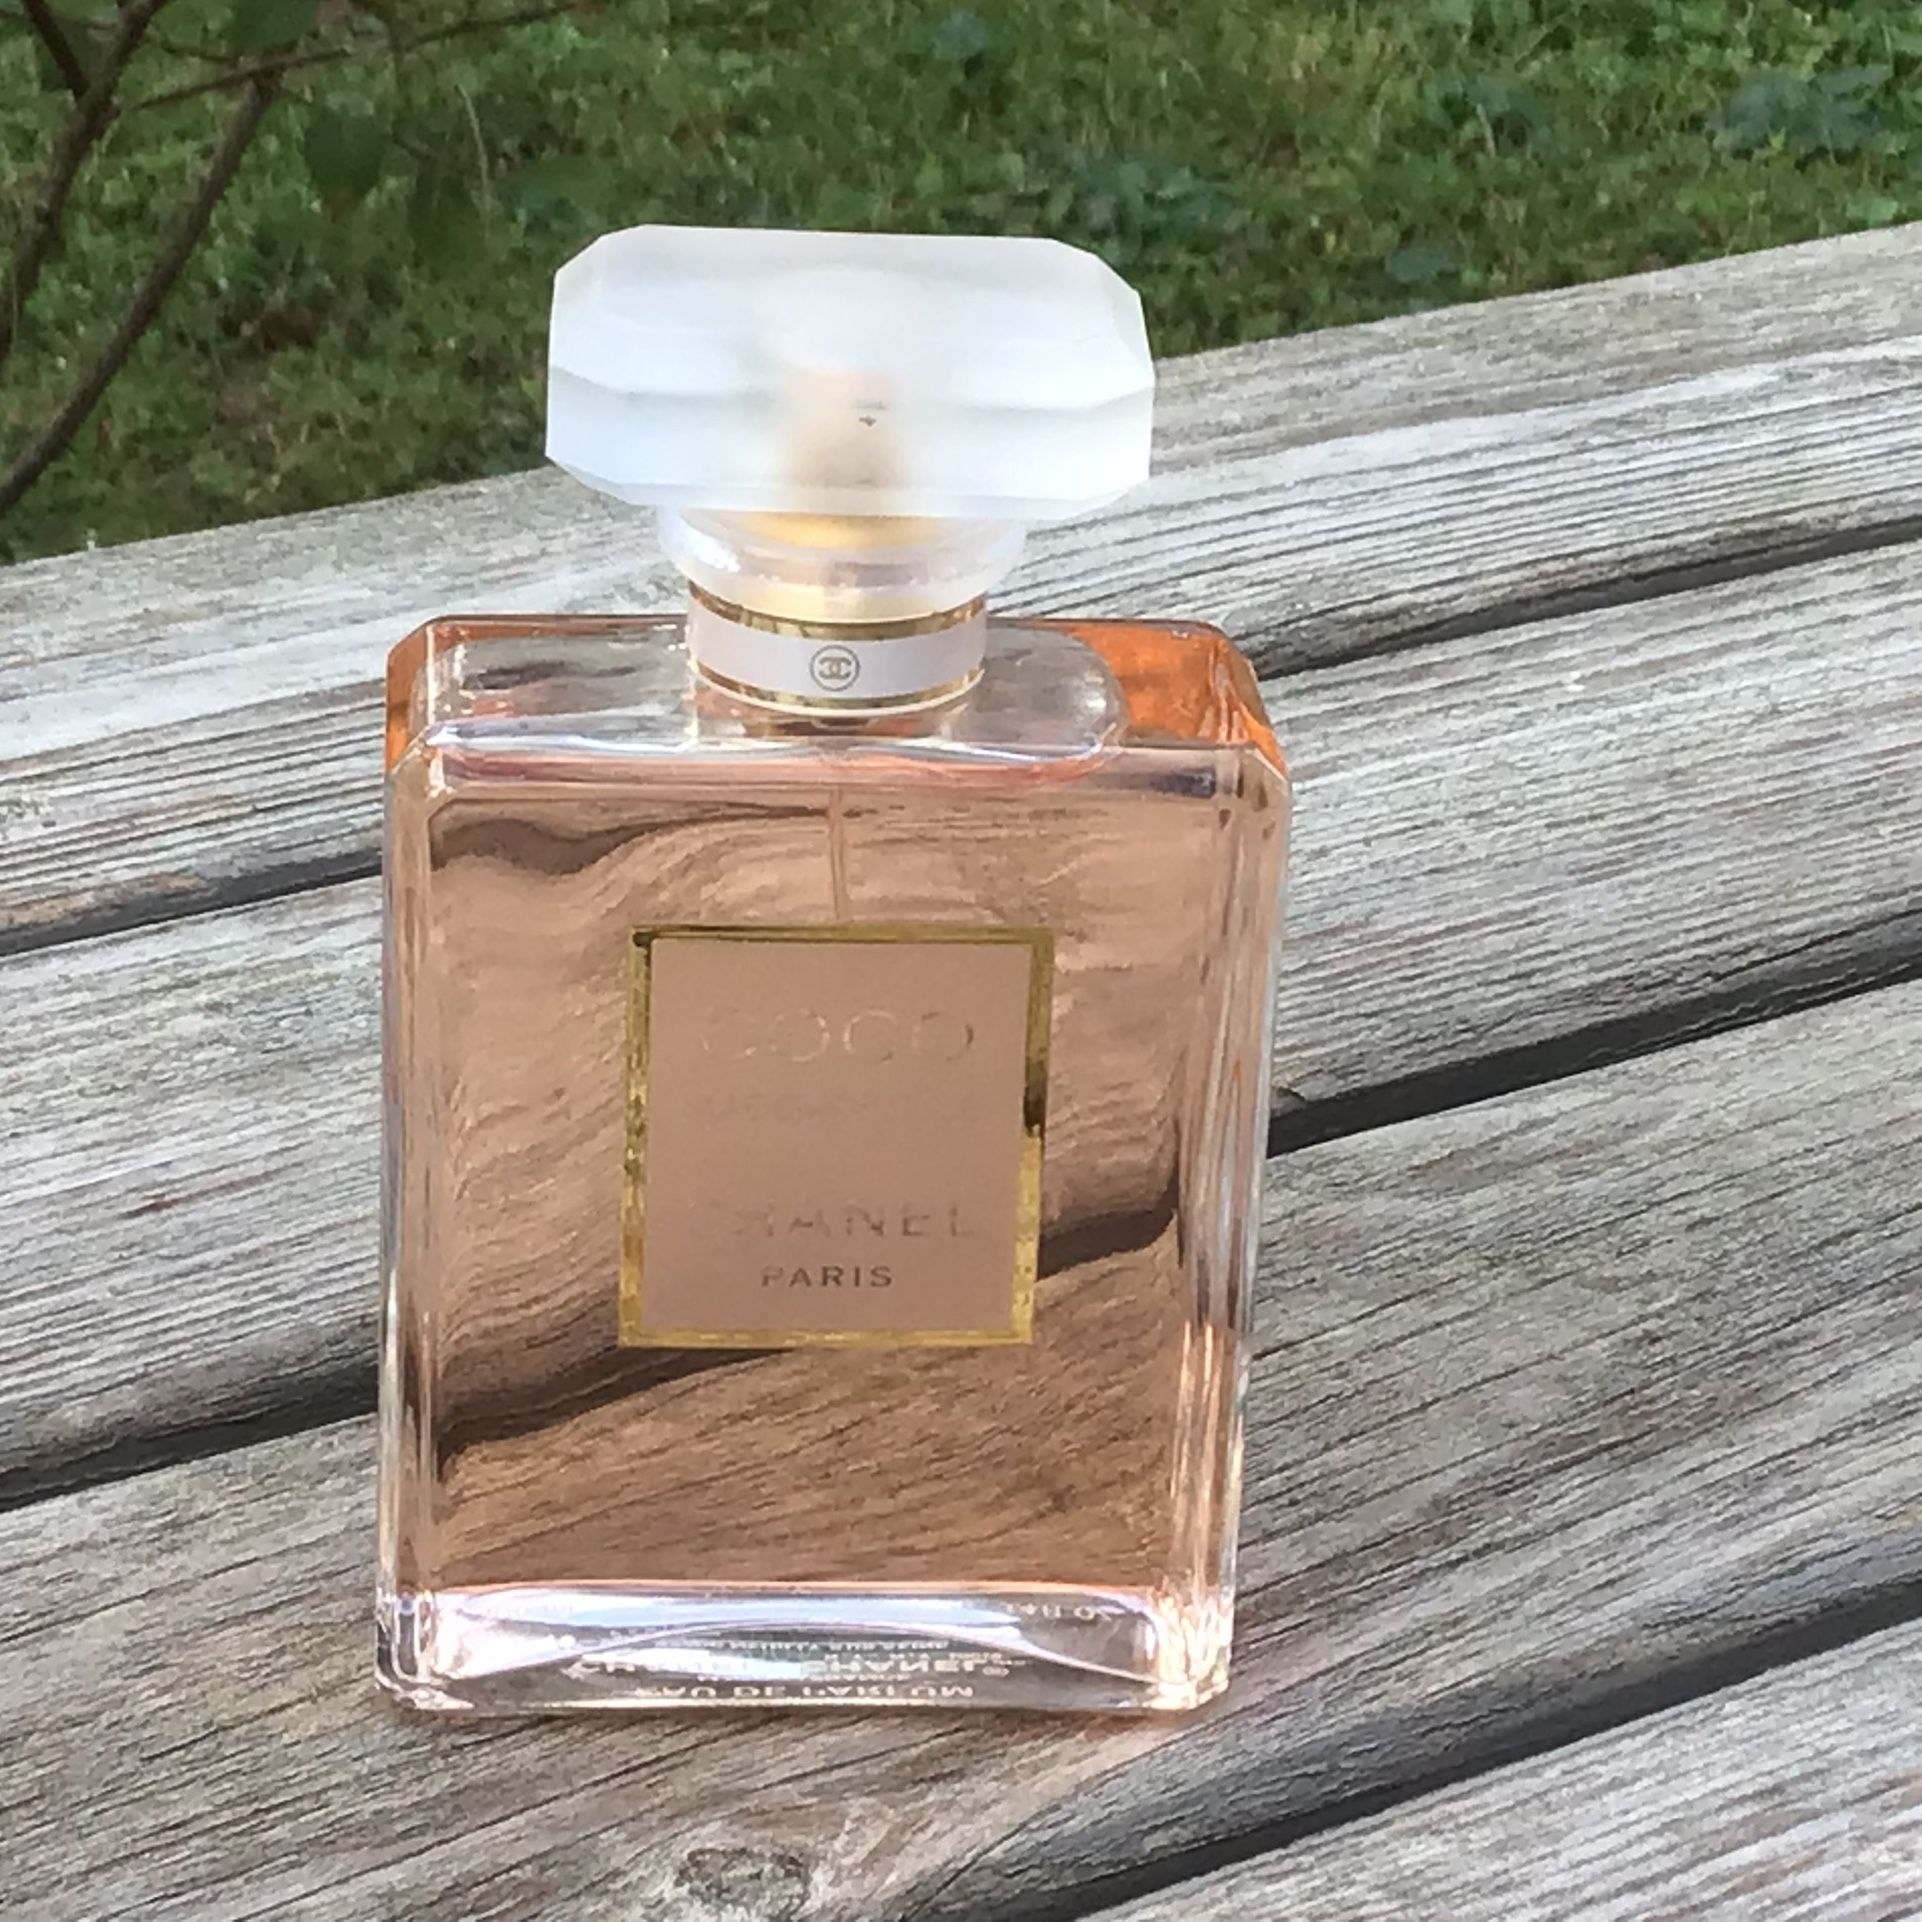 Chanel CHANtE Eau de Parfum Spray Paris 3.4 FL OZ for Sale in